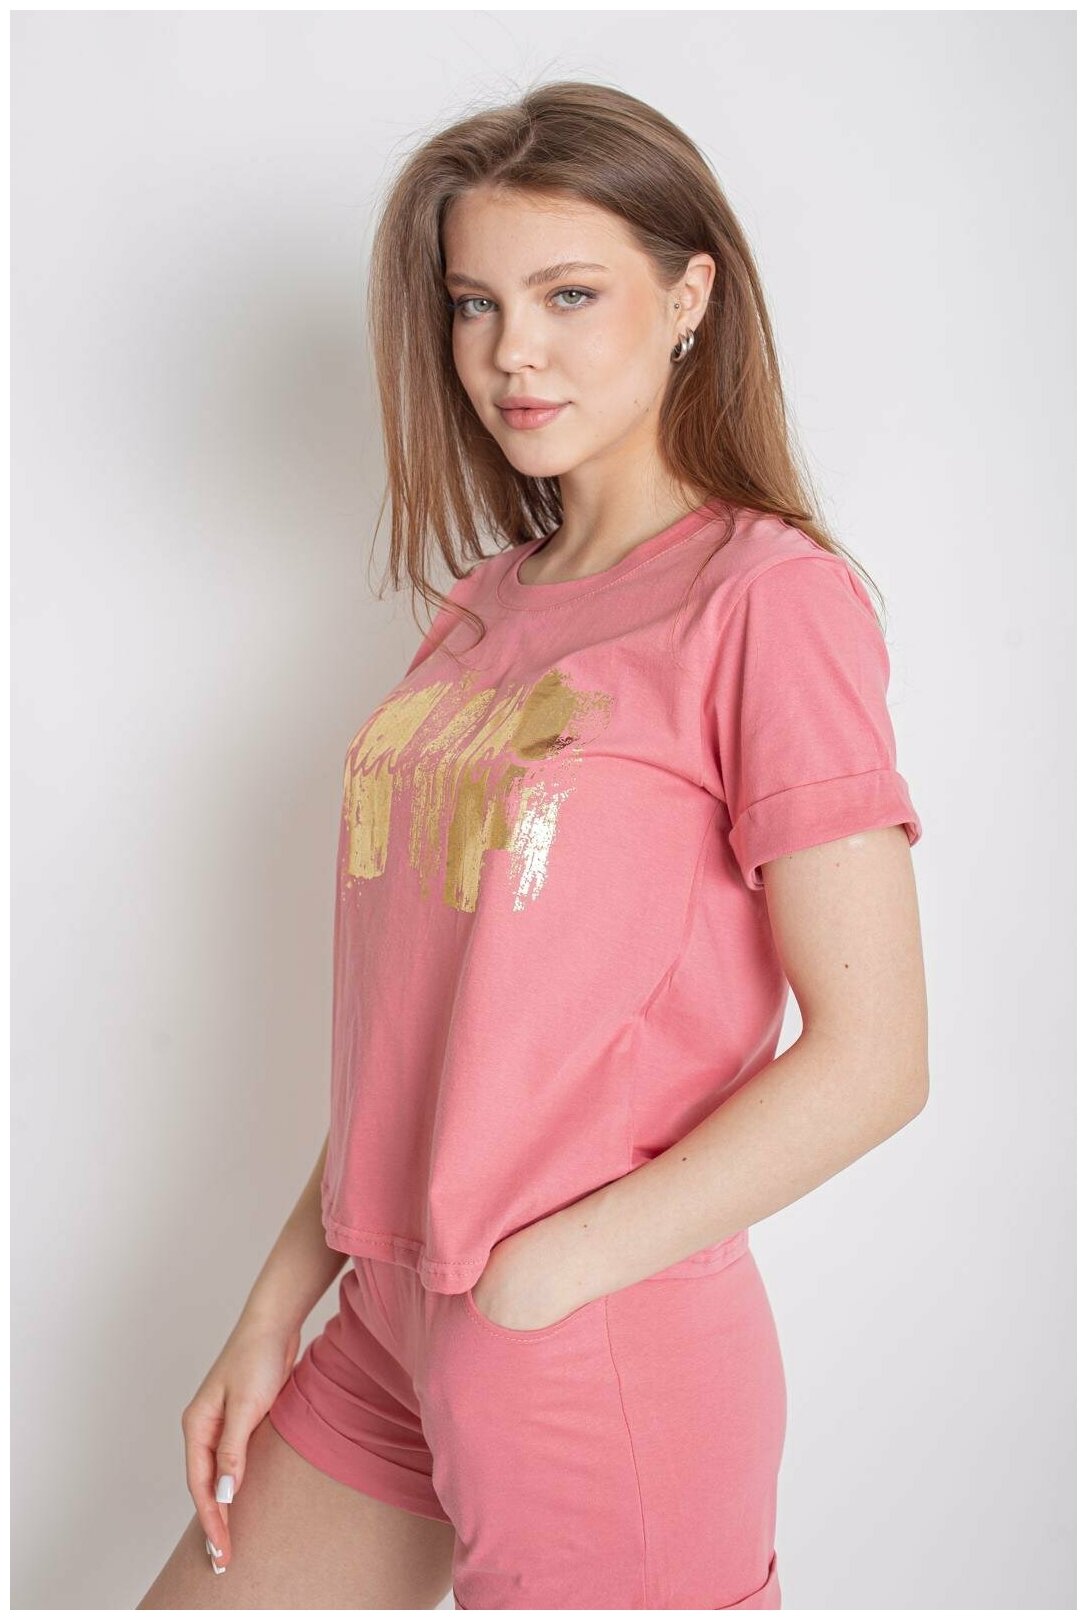 Женский домашний костюм Фантазия Розовый размер 46 Трикотаж Лика Дресс футболка с коротким рукавом шорты с кармнами - фотография № 5